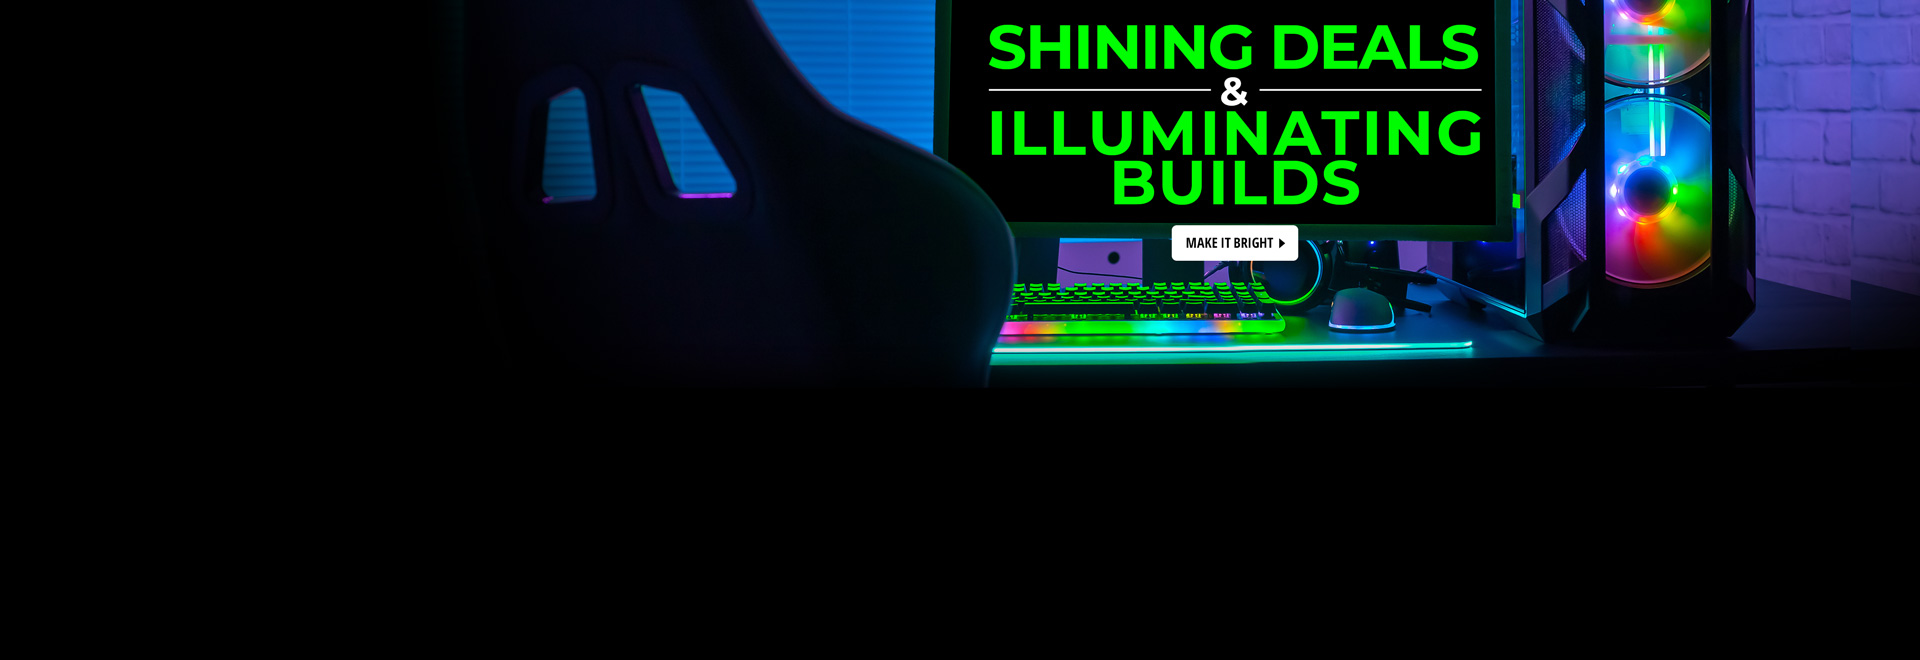 Shining Deals & Illuminating Builds